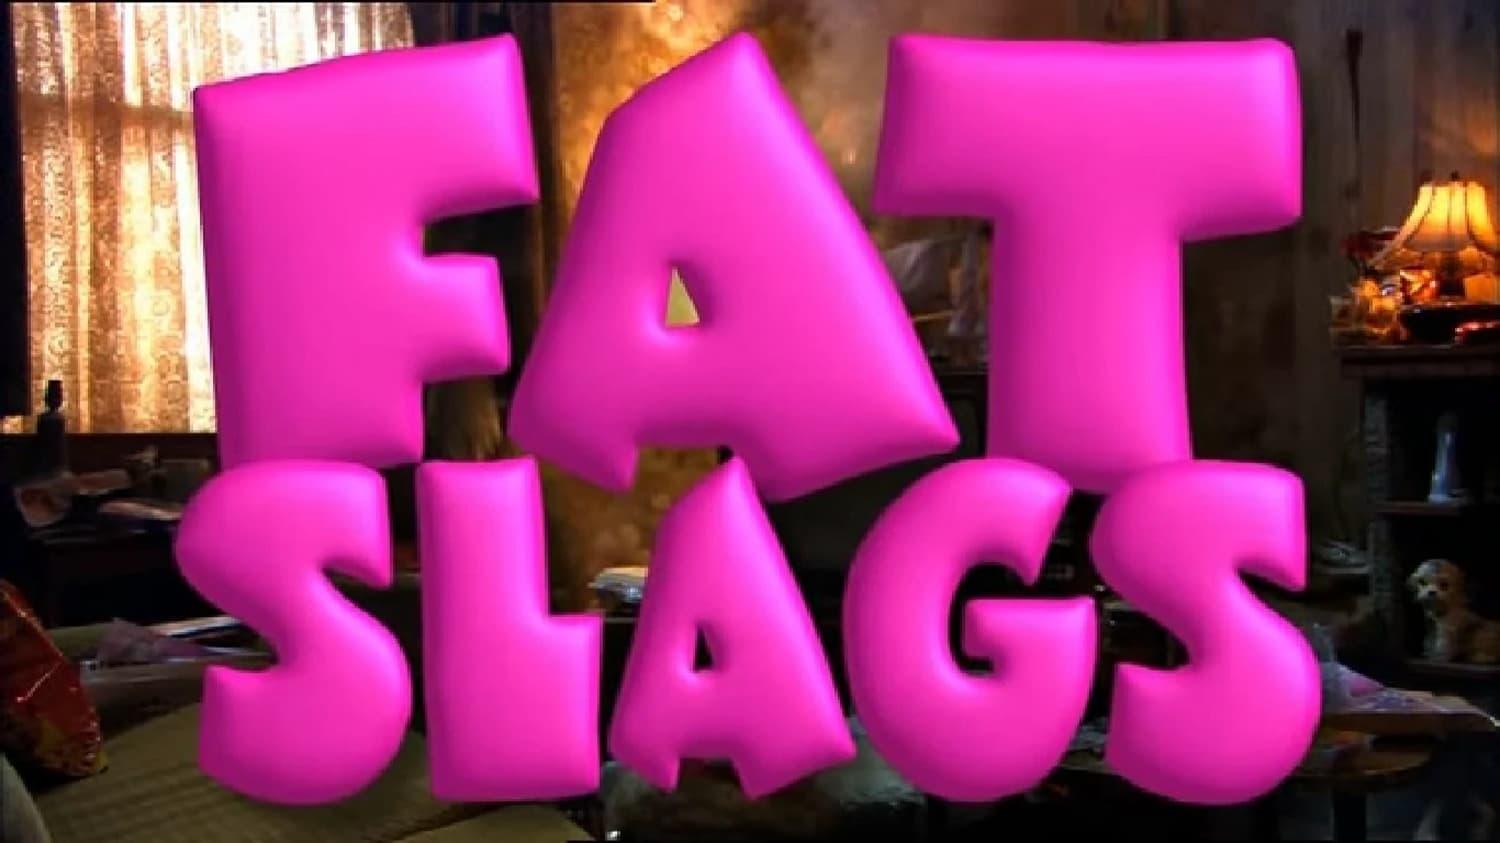 Fat Slags backdrop